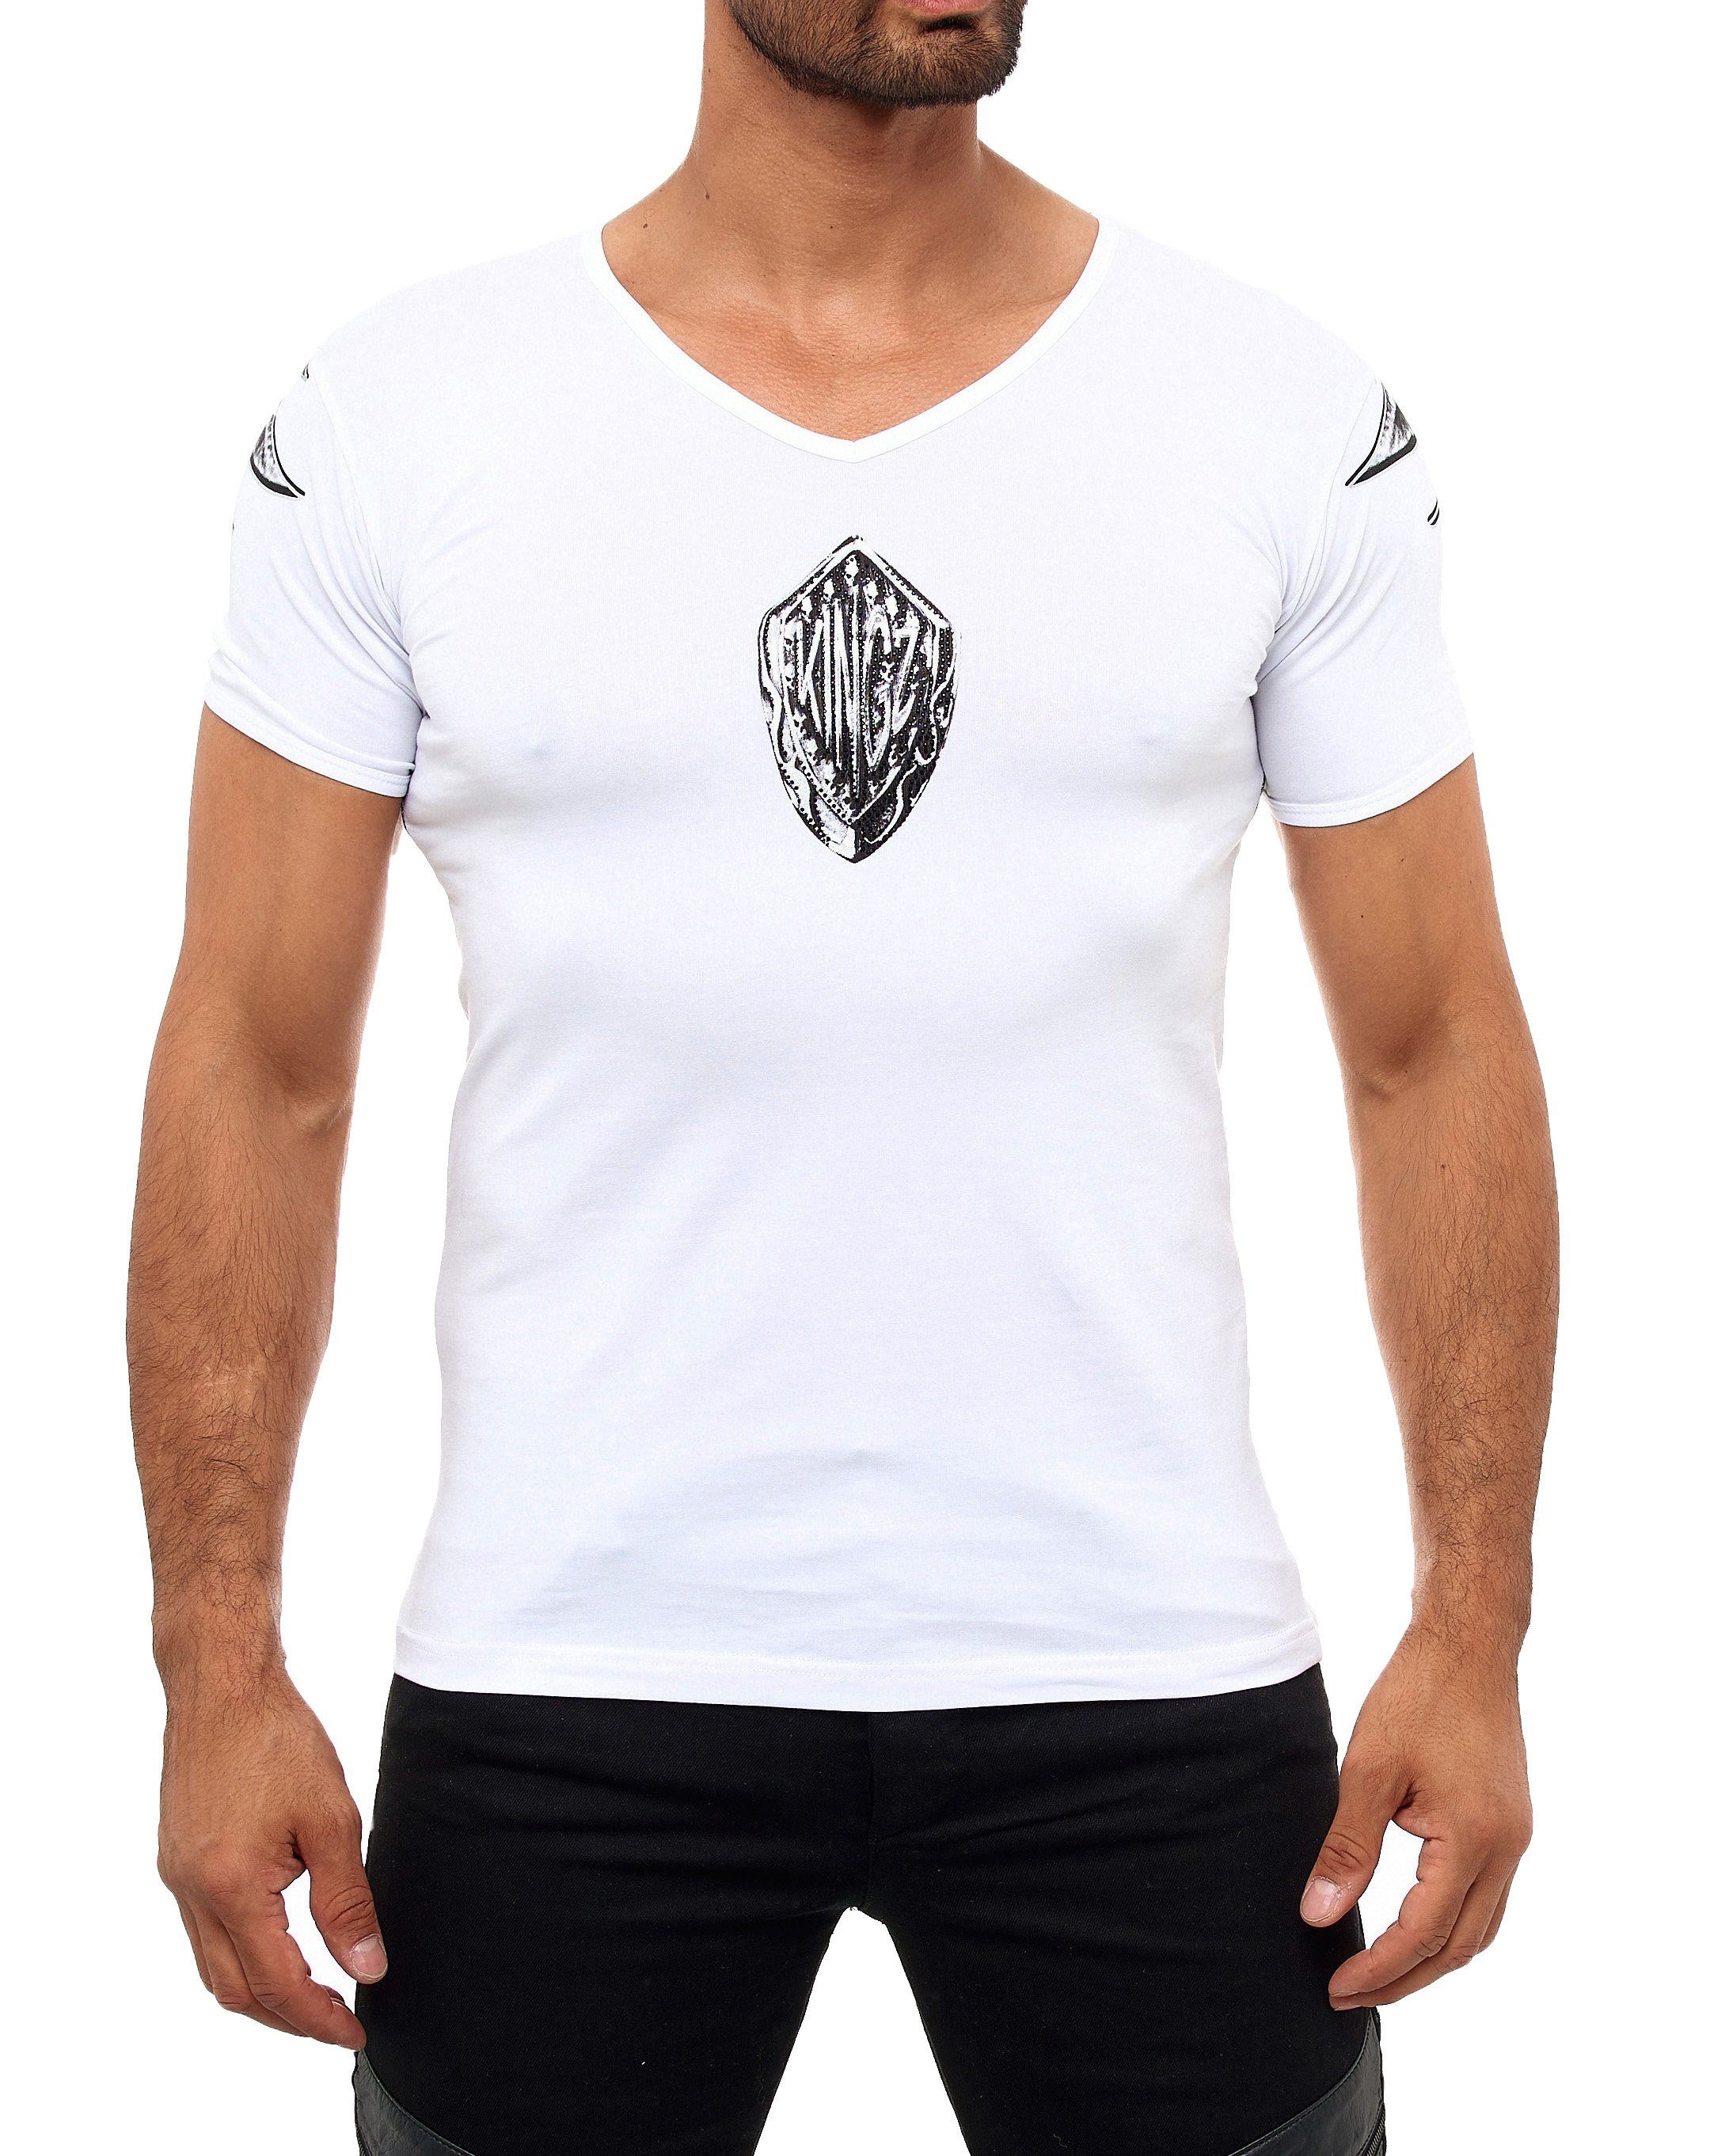 KINGZ T-Shirt mit ausgefallenem Adler-Print weiß-silberfarben